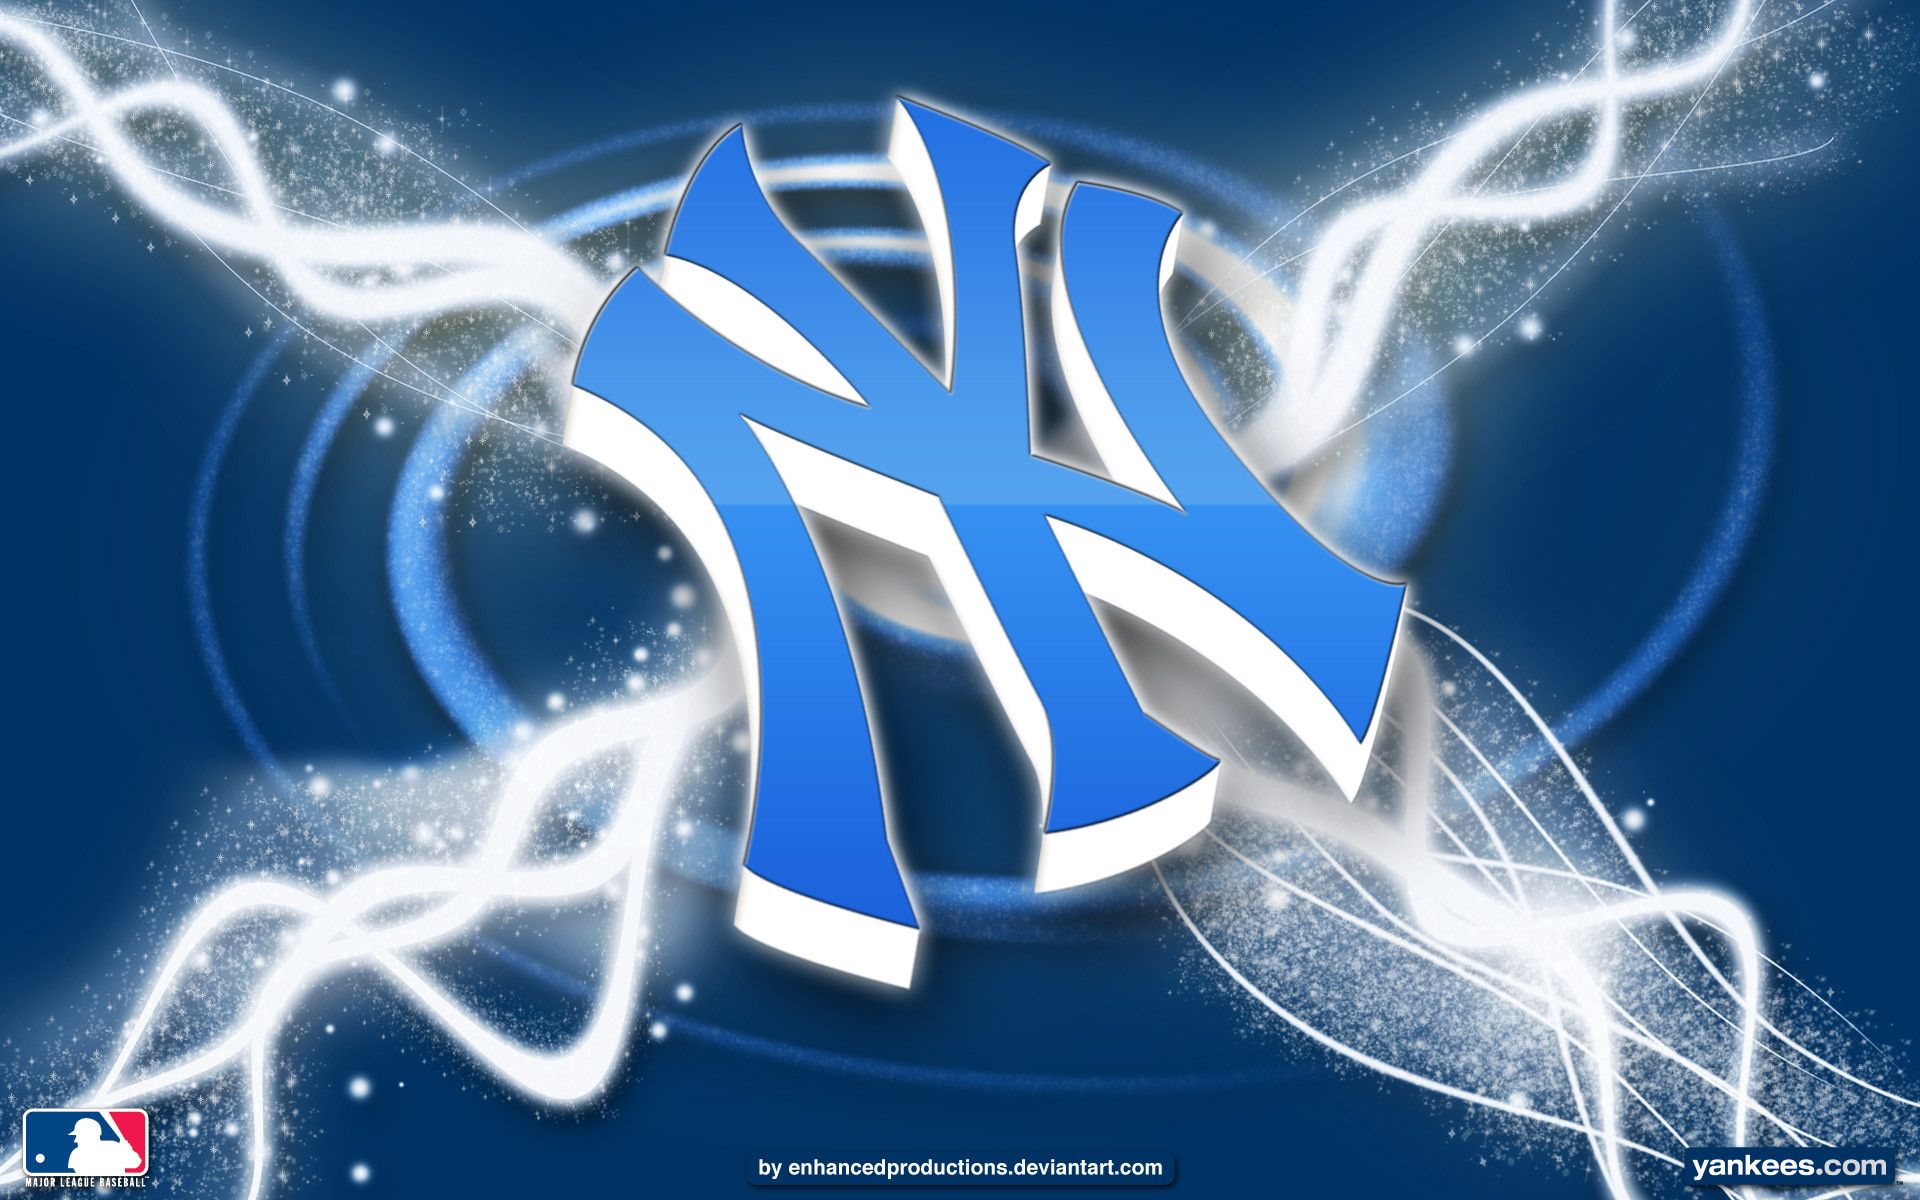 Ny Yankees Logo Wallpapers - Wallpaper Cave